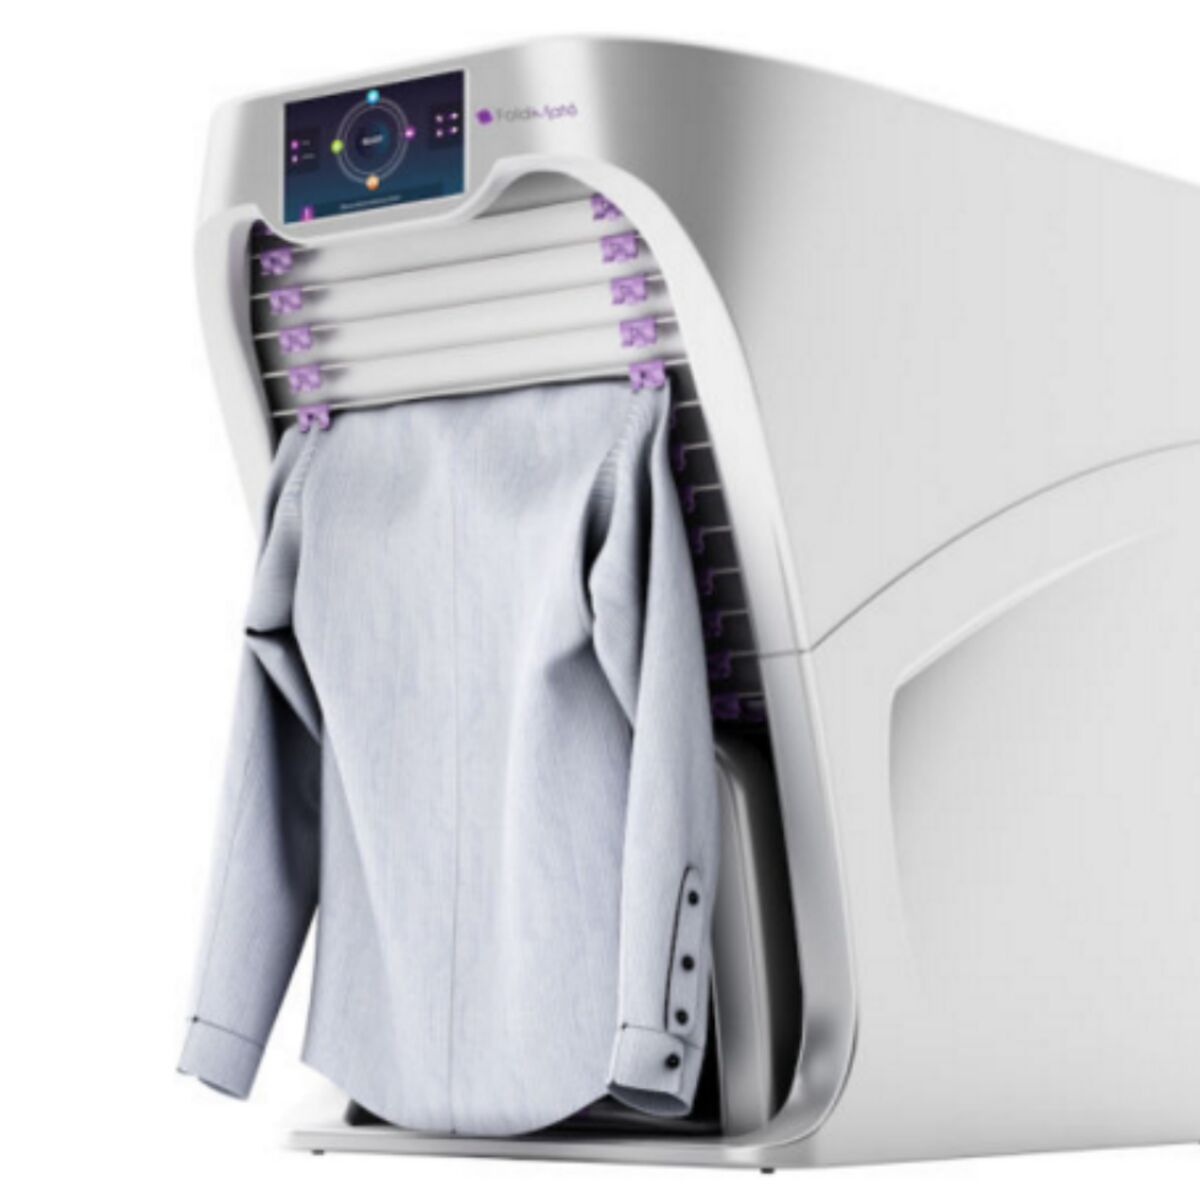 Foldimate, un robot qui plie les vêtements à votre place